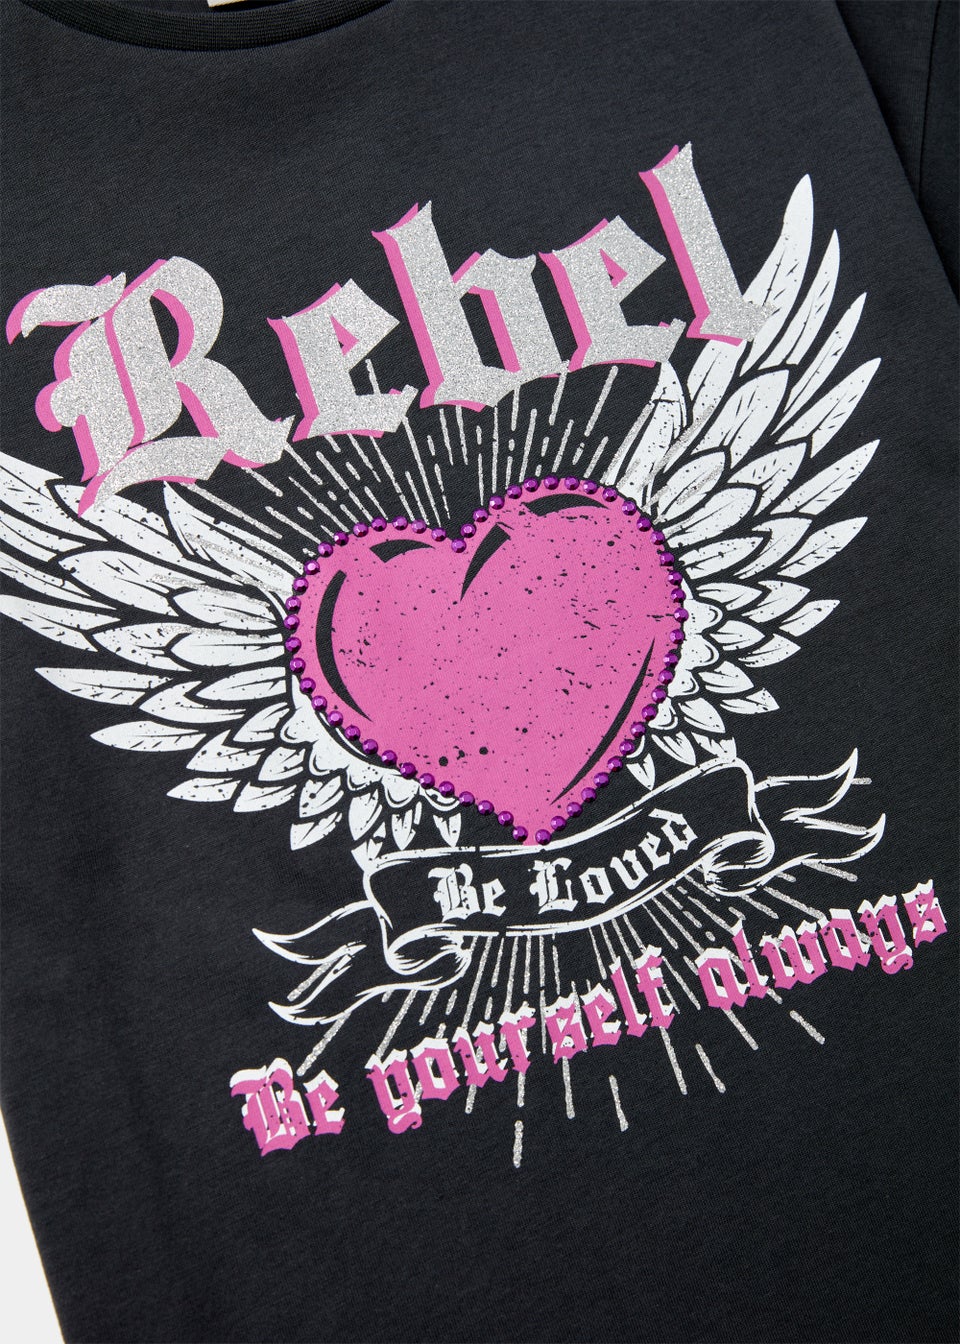 Girls Grey Rebel T-Shirt (4-13yrs)